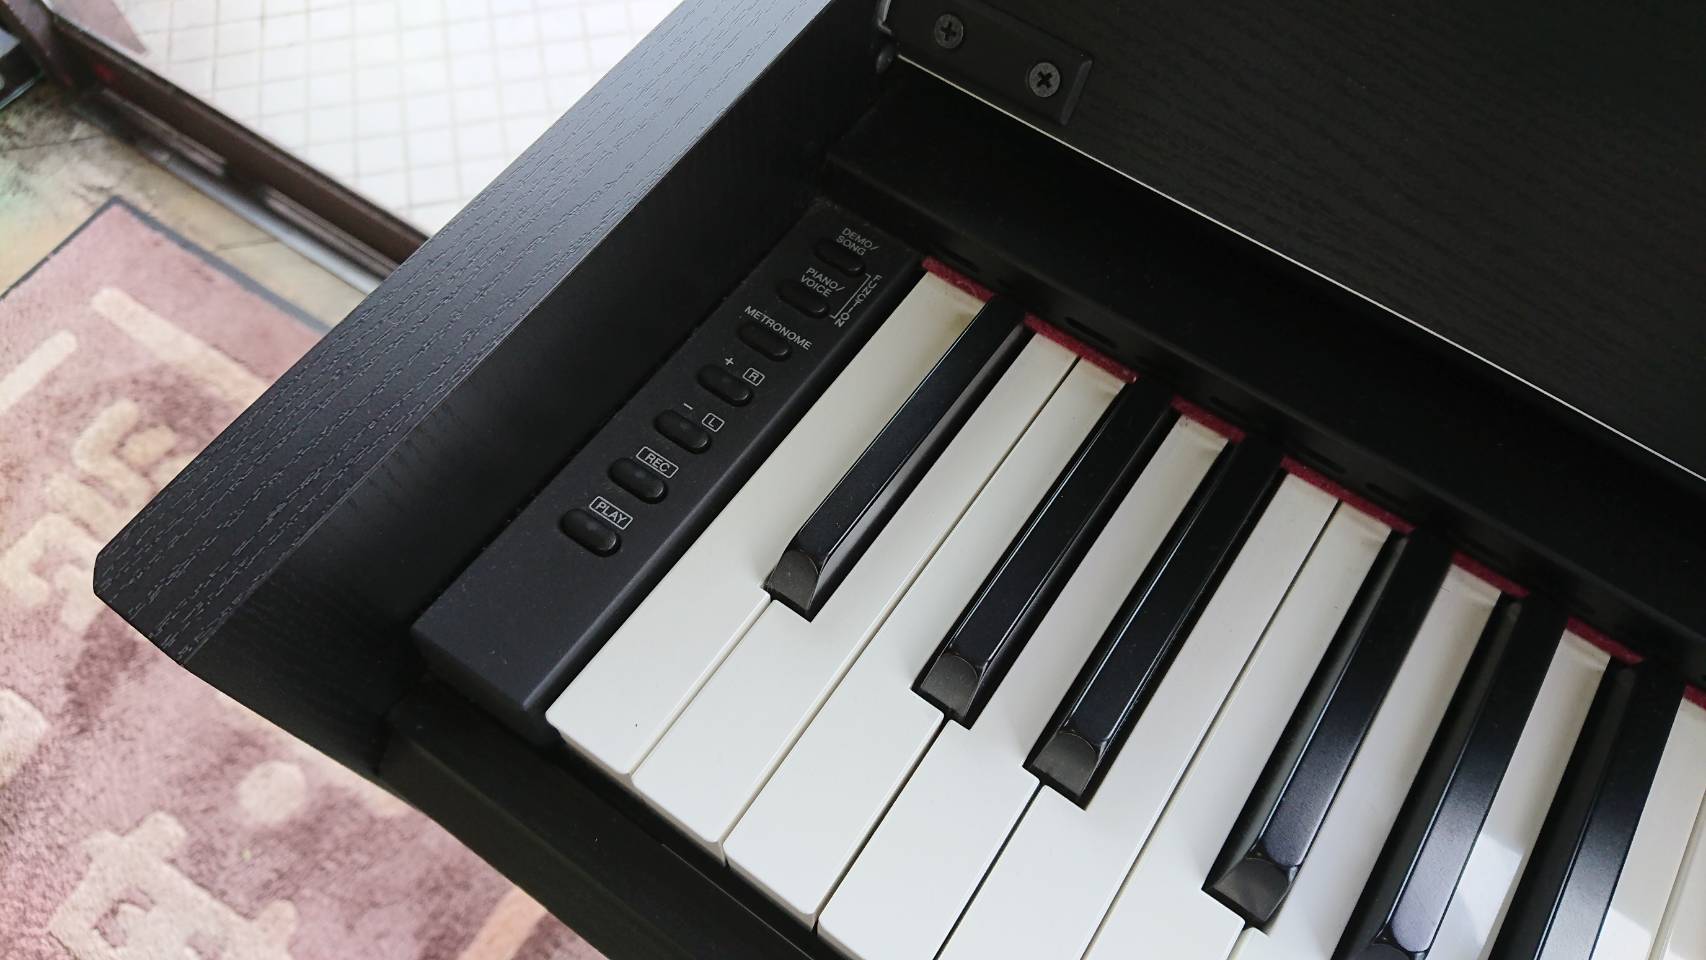 ☆YAMAHA ヤマハ 電子ピアノ ARIUS アリウス YDP-S51 2012年製 省スペース デジタルピアノ 買取しました☆ | 愛知と